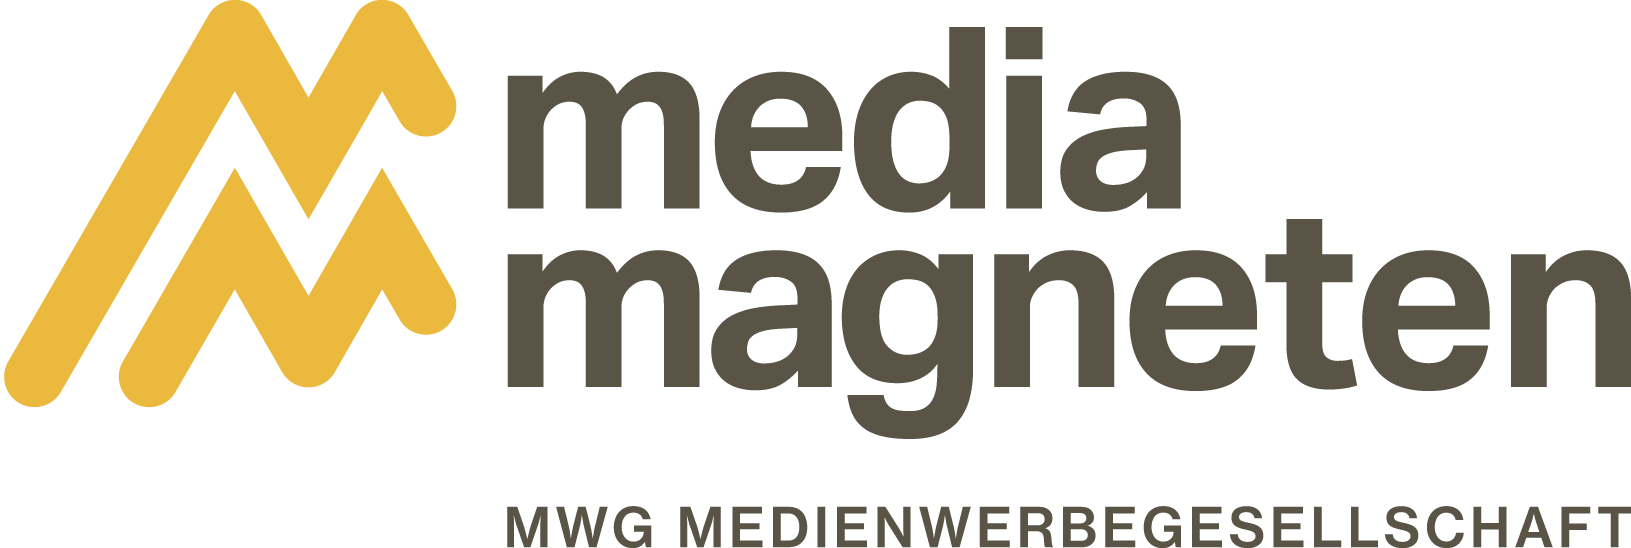 mediamagneten_MWG_Mediengesellschaft_hagen_logo